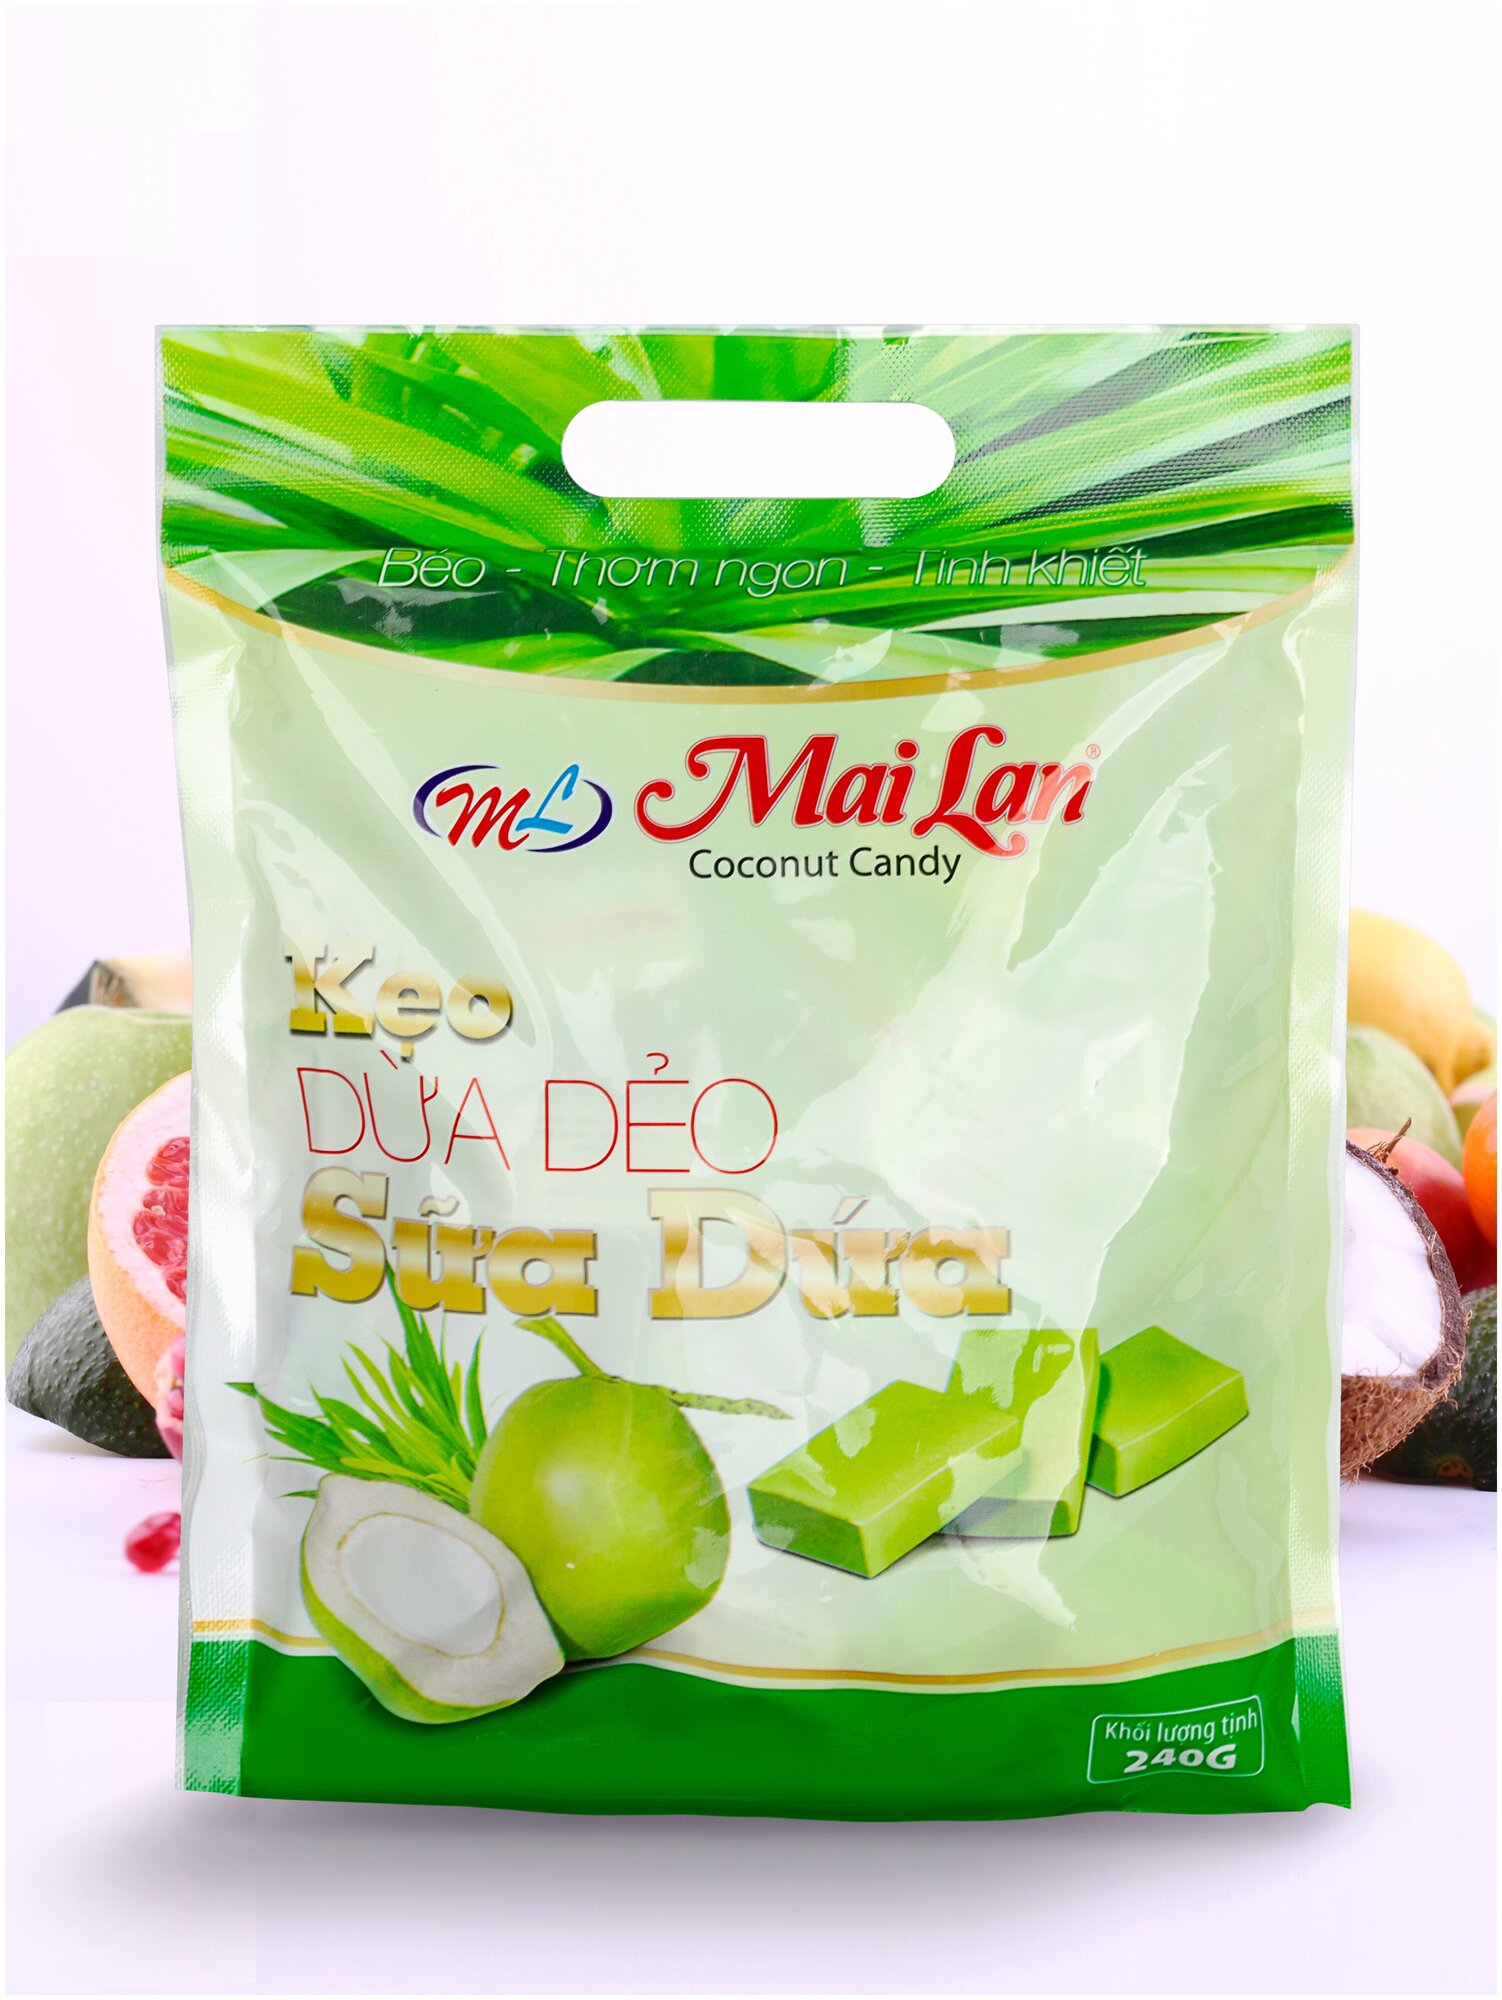 Натуральные кокосовые конфеты (240г.), Mai Lan, KEO DUA DEO, Coconut Candy, Sua Dua, Вьетнам